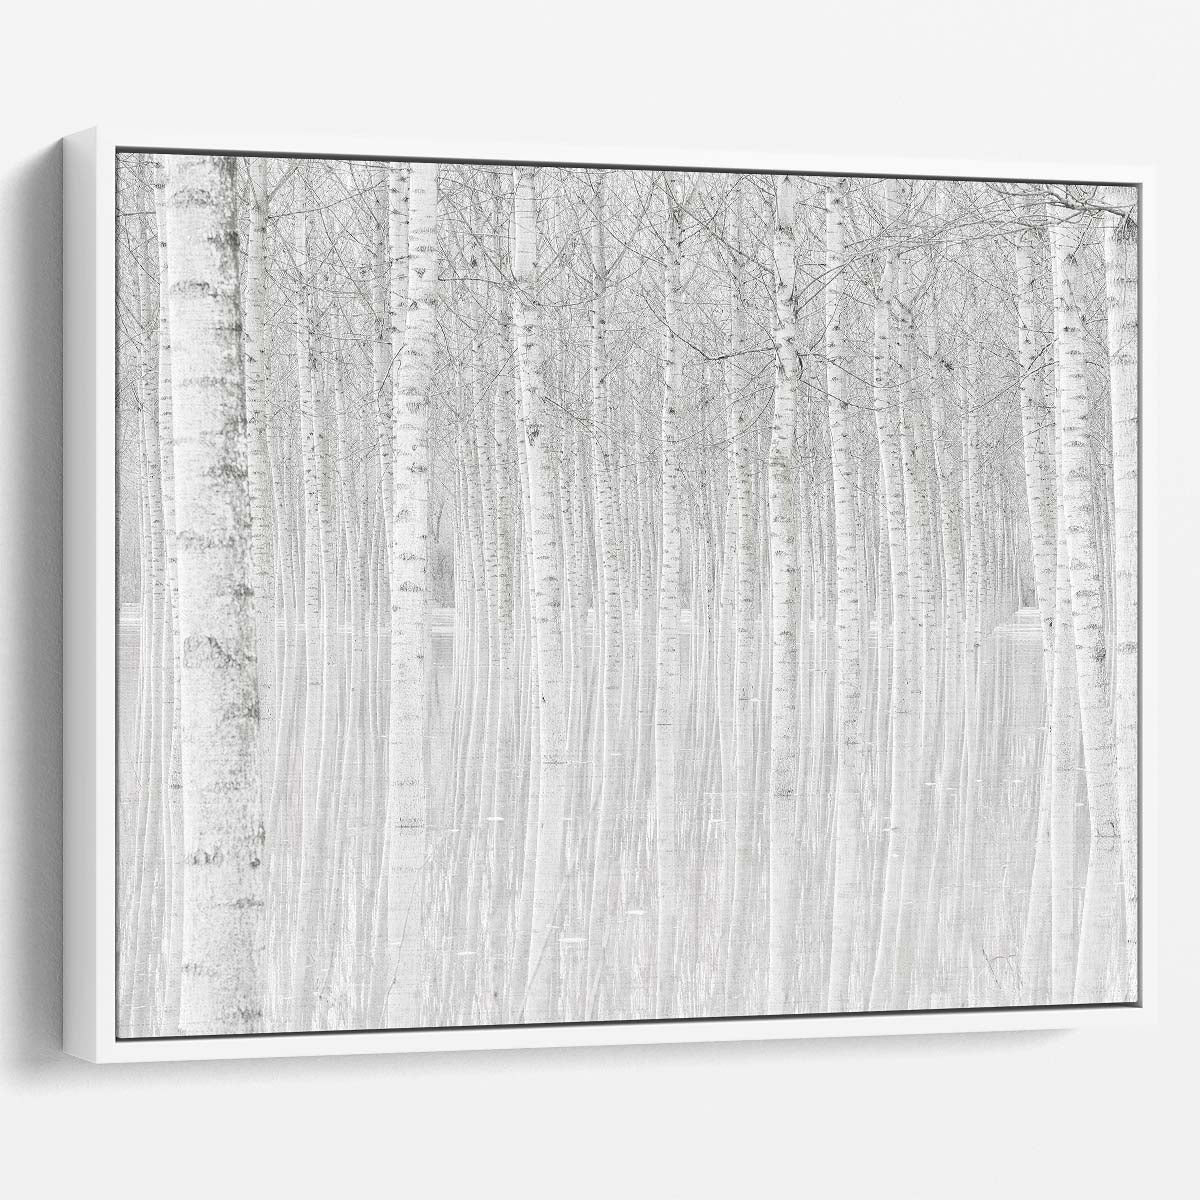 Snowy Birch Forest Winter Wonderland Wall Art by Luxuriance Designs. Made in USA.